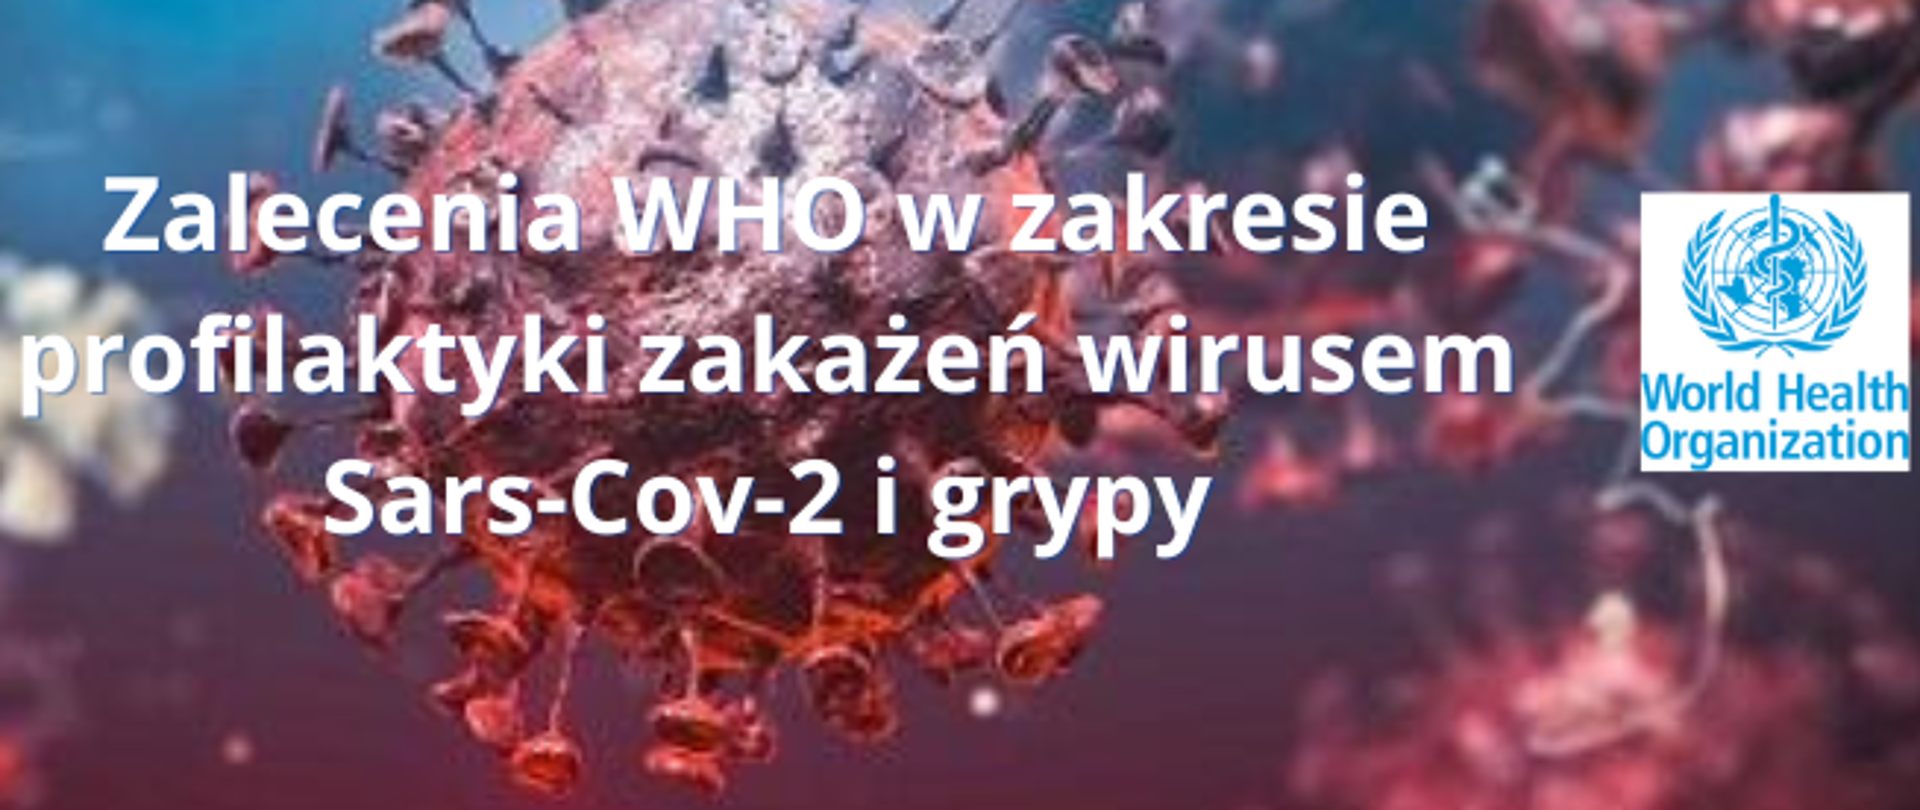 Zalecenia_WHO_w_zakresie_profilaktyki_zakażeń_wirusem_Sars-Cov-2_i_grypy